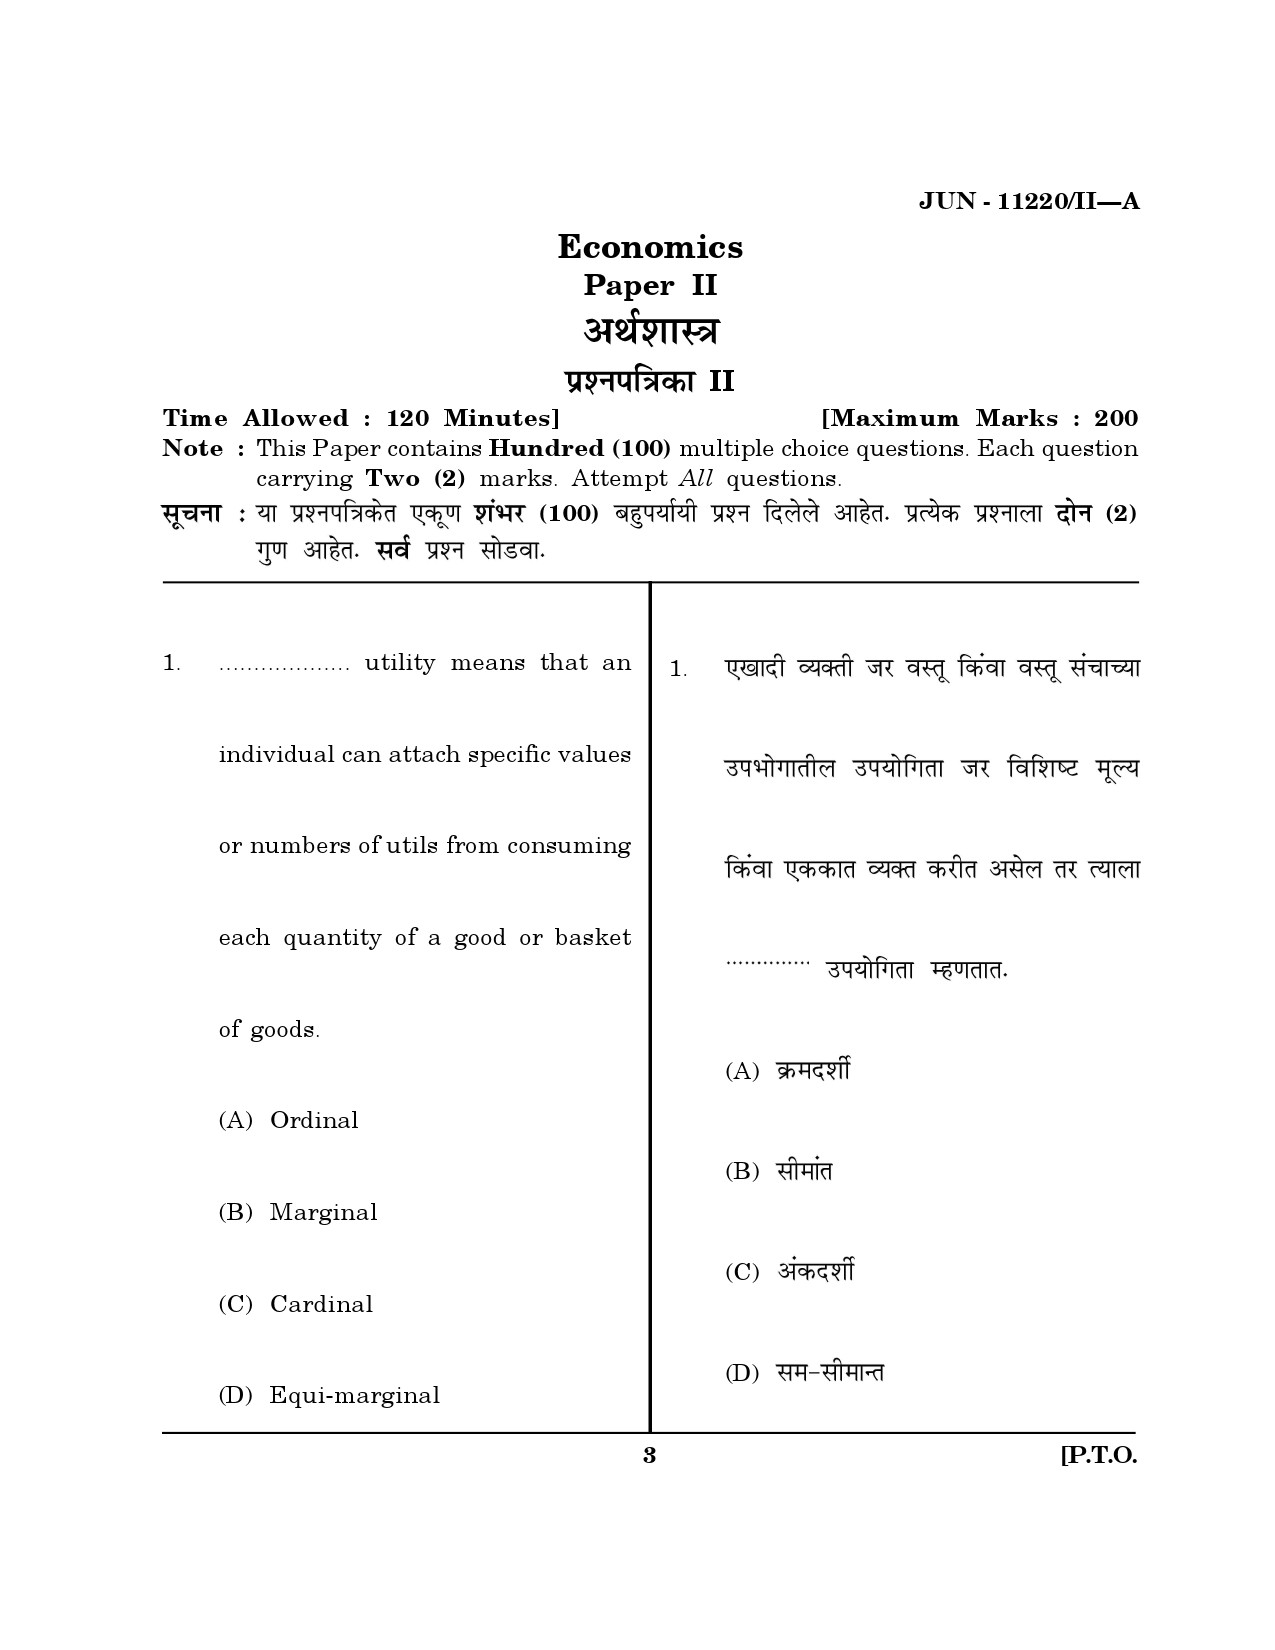 Maharashtra SET Economics Question Paper II June 2020 2